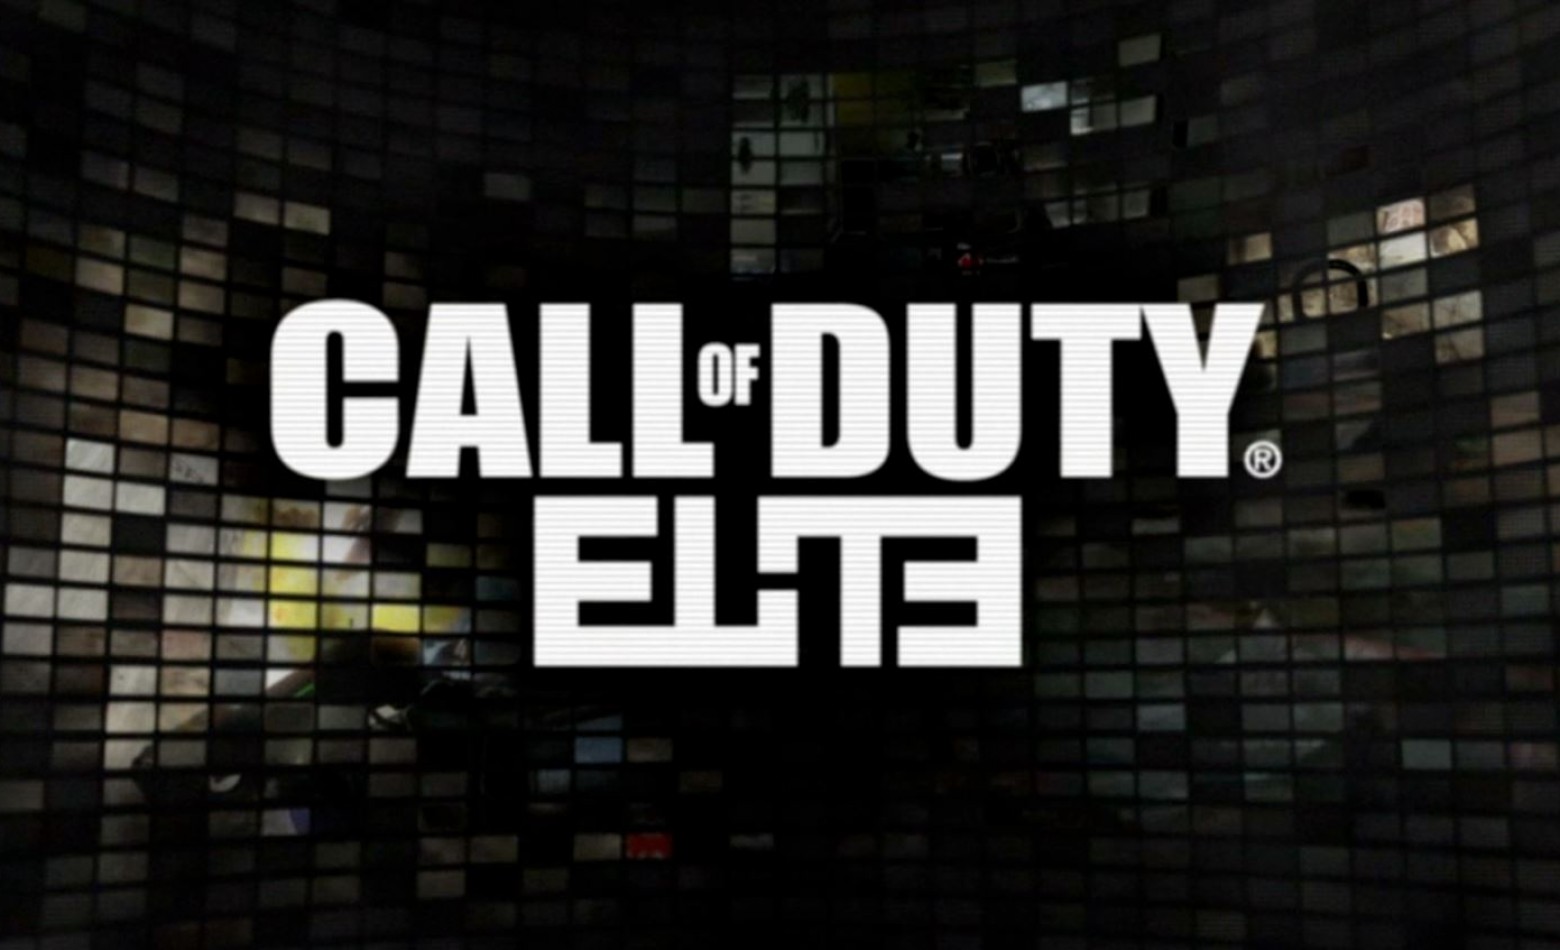 Call of Duty Elite será encerrado em 28 de fevereiro